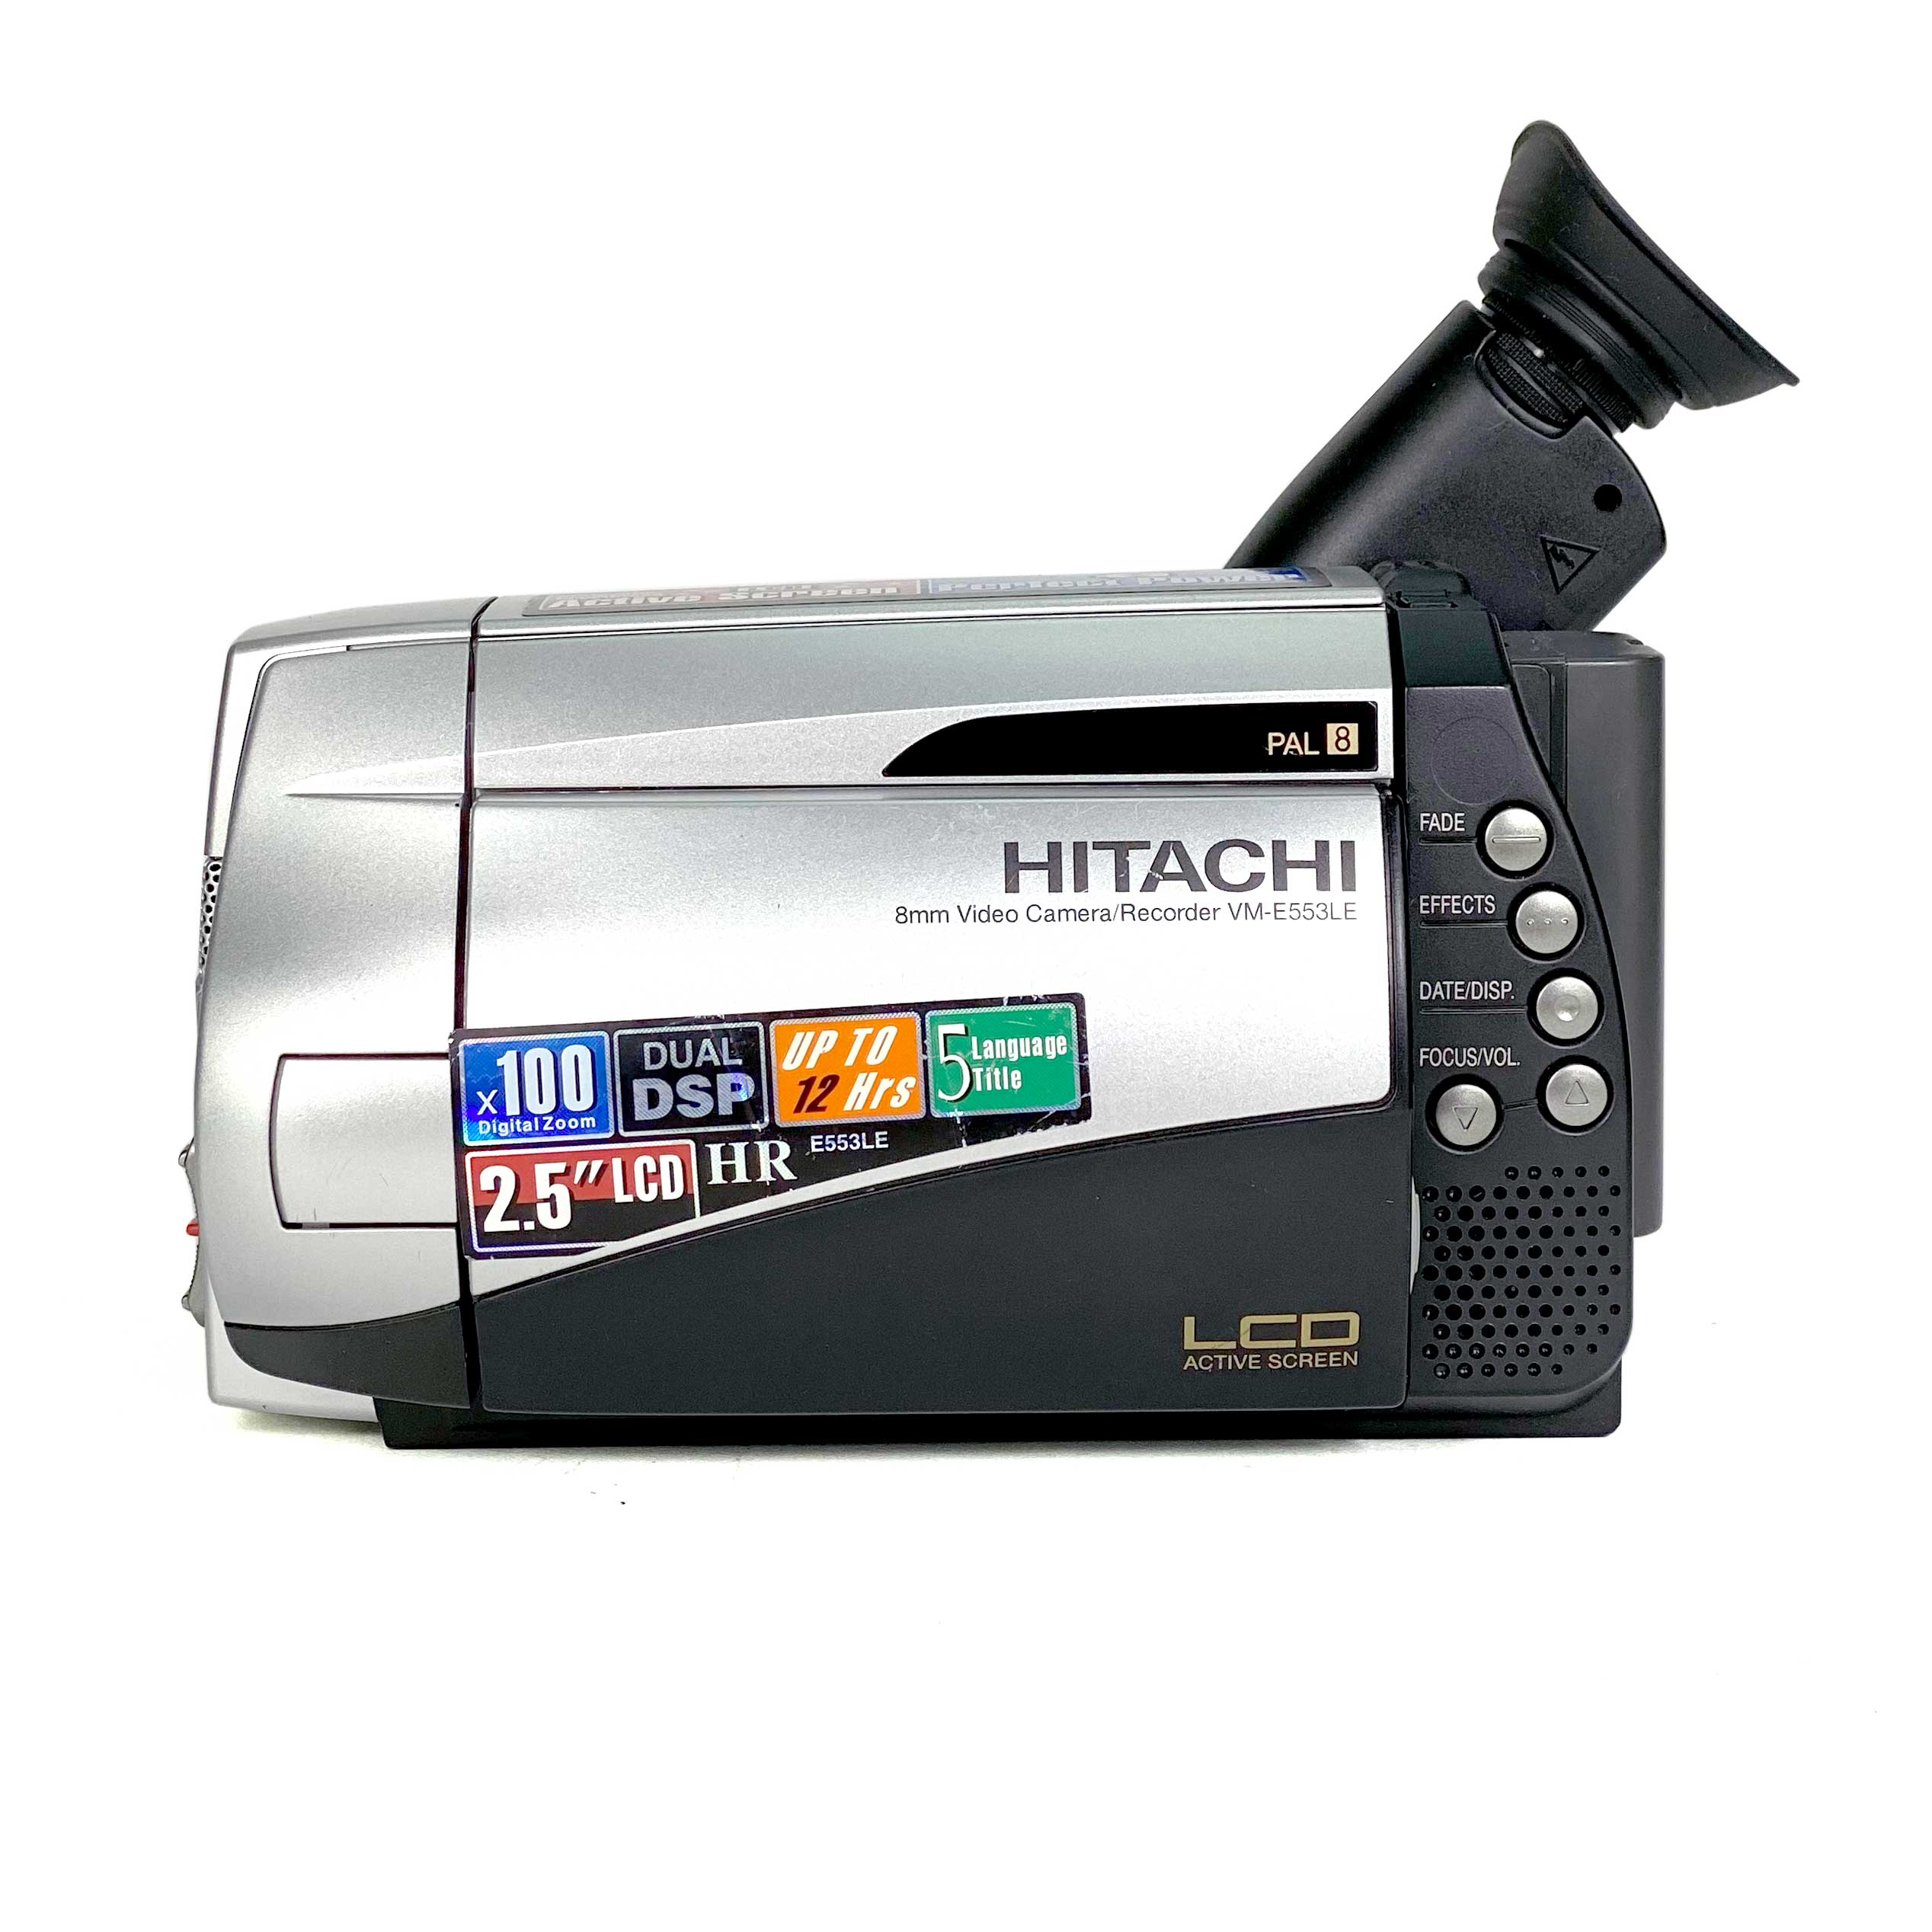 lanzar Inclinarse Capitán Brie Hitachi VM-E553LE 8mm PAL 8 Video CamCorder – Retro Camera Shop